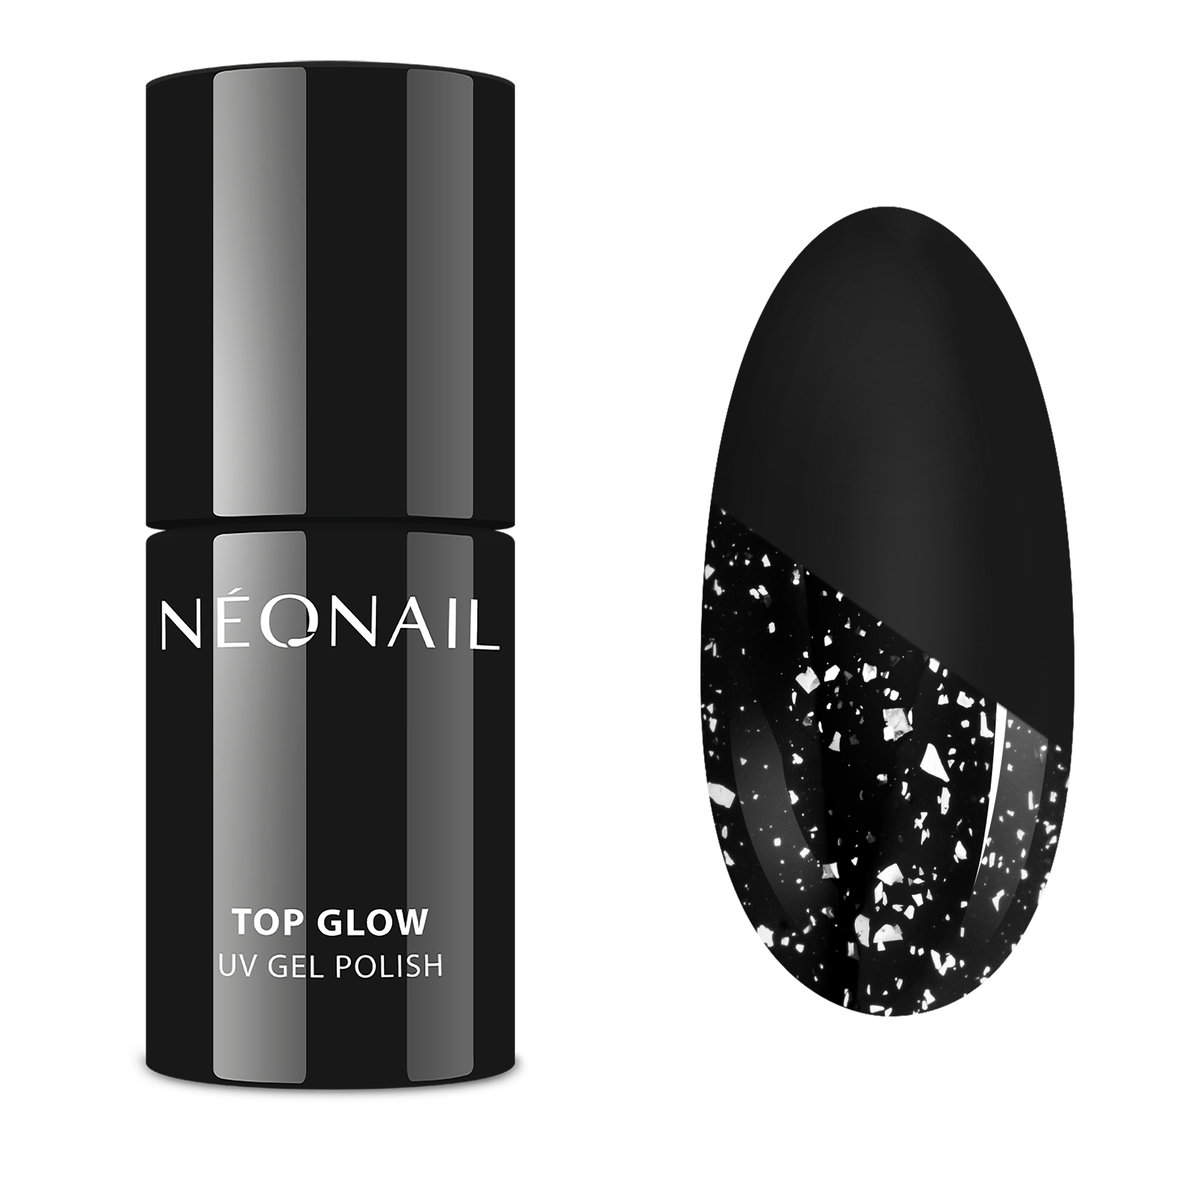 NeoNail UV GEL POLISH - TOP GLOW - Top / Lakier nawierzchniowy z błyszczącymi drobinkami - 7,2 ml - 8806-7 SILVER FLAKES